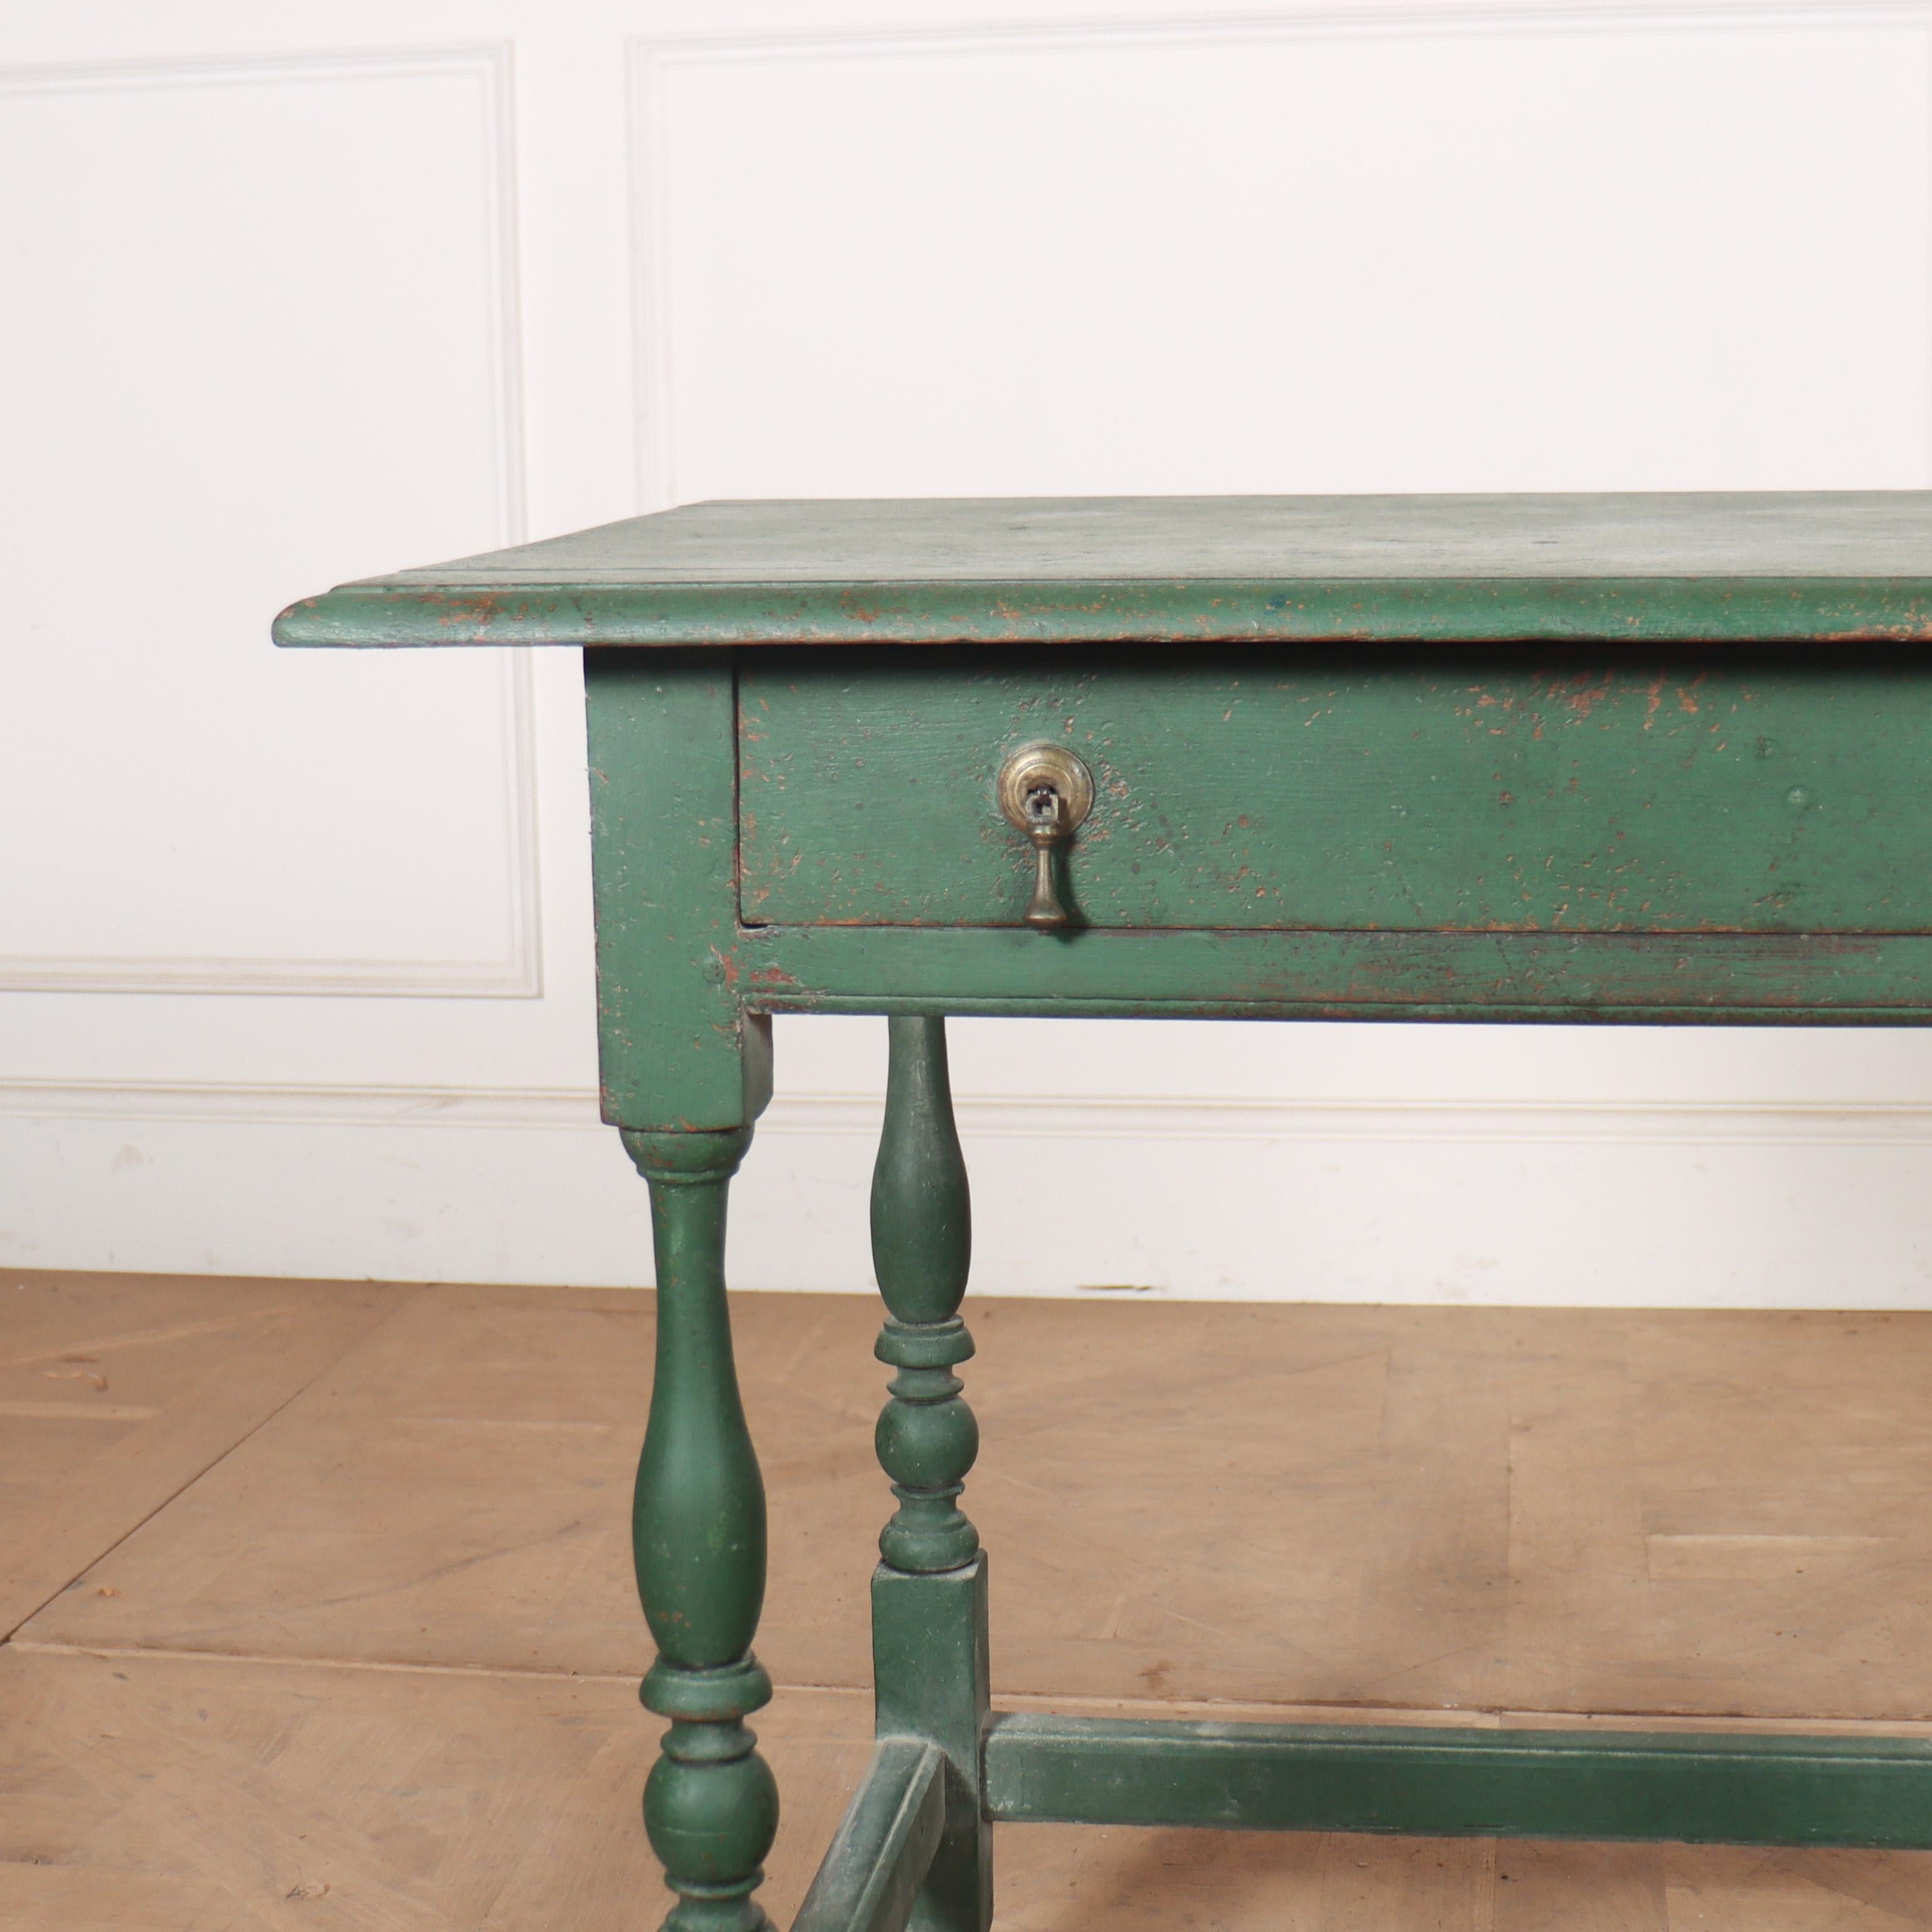 A.C.I.C., table à lampe à un tiroir en chêne peint du 18e siècle. 1760.

Référence : 8226

Dimensions
31 pouces (79 cm) de large
22 pouces (56 cms) de profondeur
28 pouces (71 cms) de hauteur